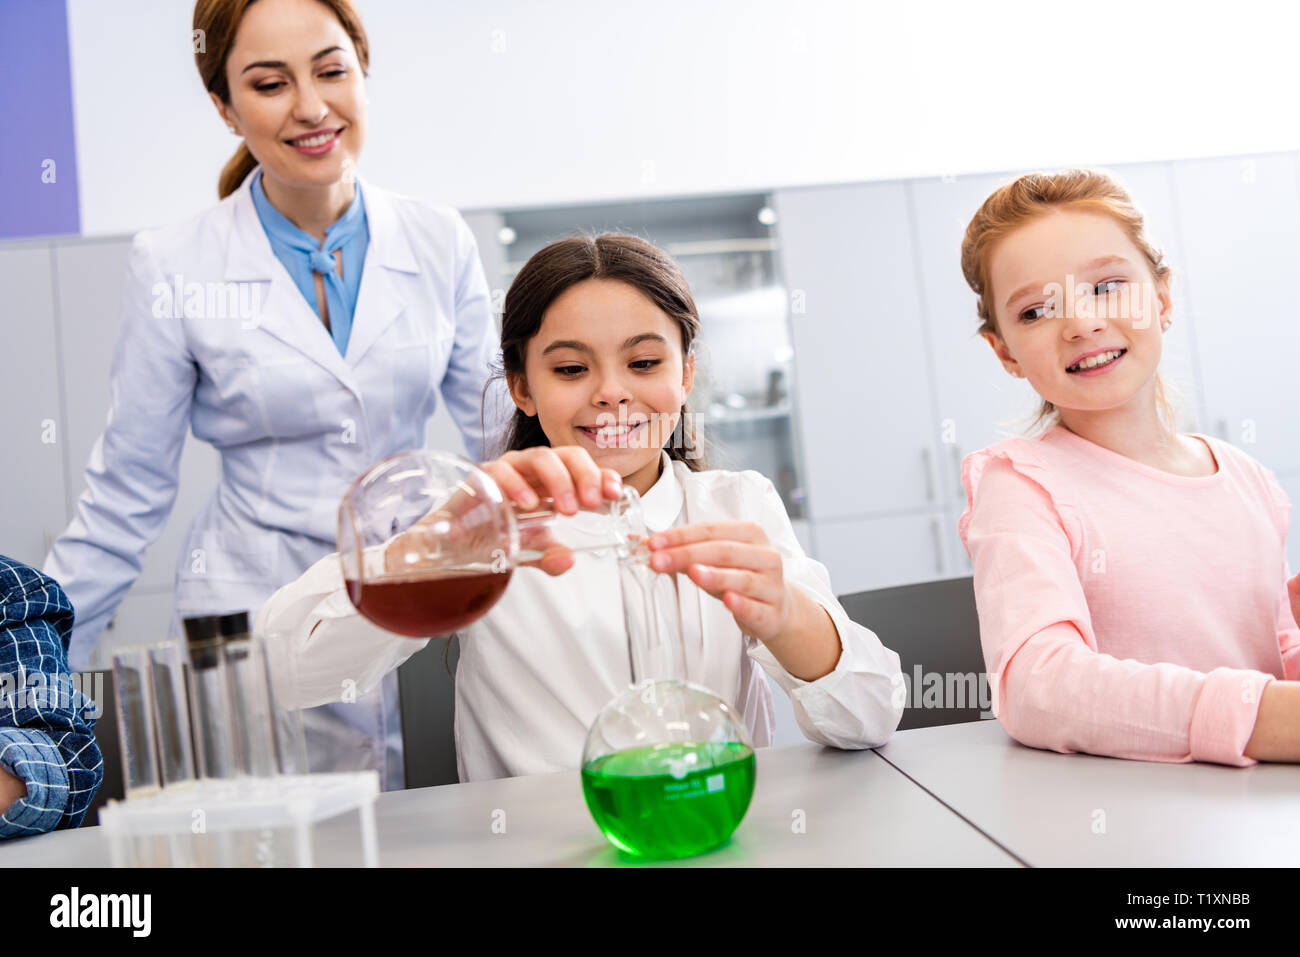 La scolaretta sorridente con bicchieri facendo esperimento chimico durante la lezione di Chimica Foto Stock